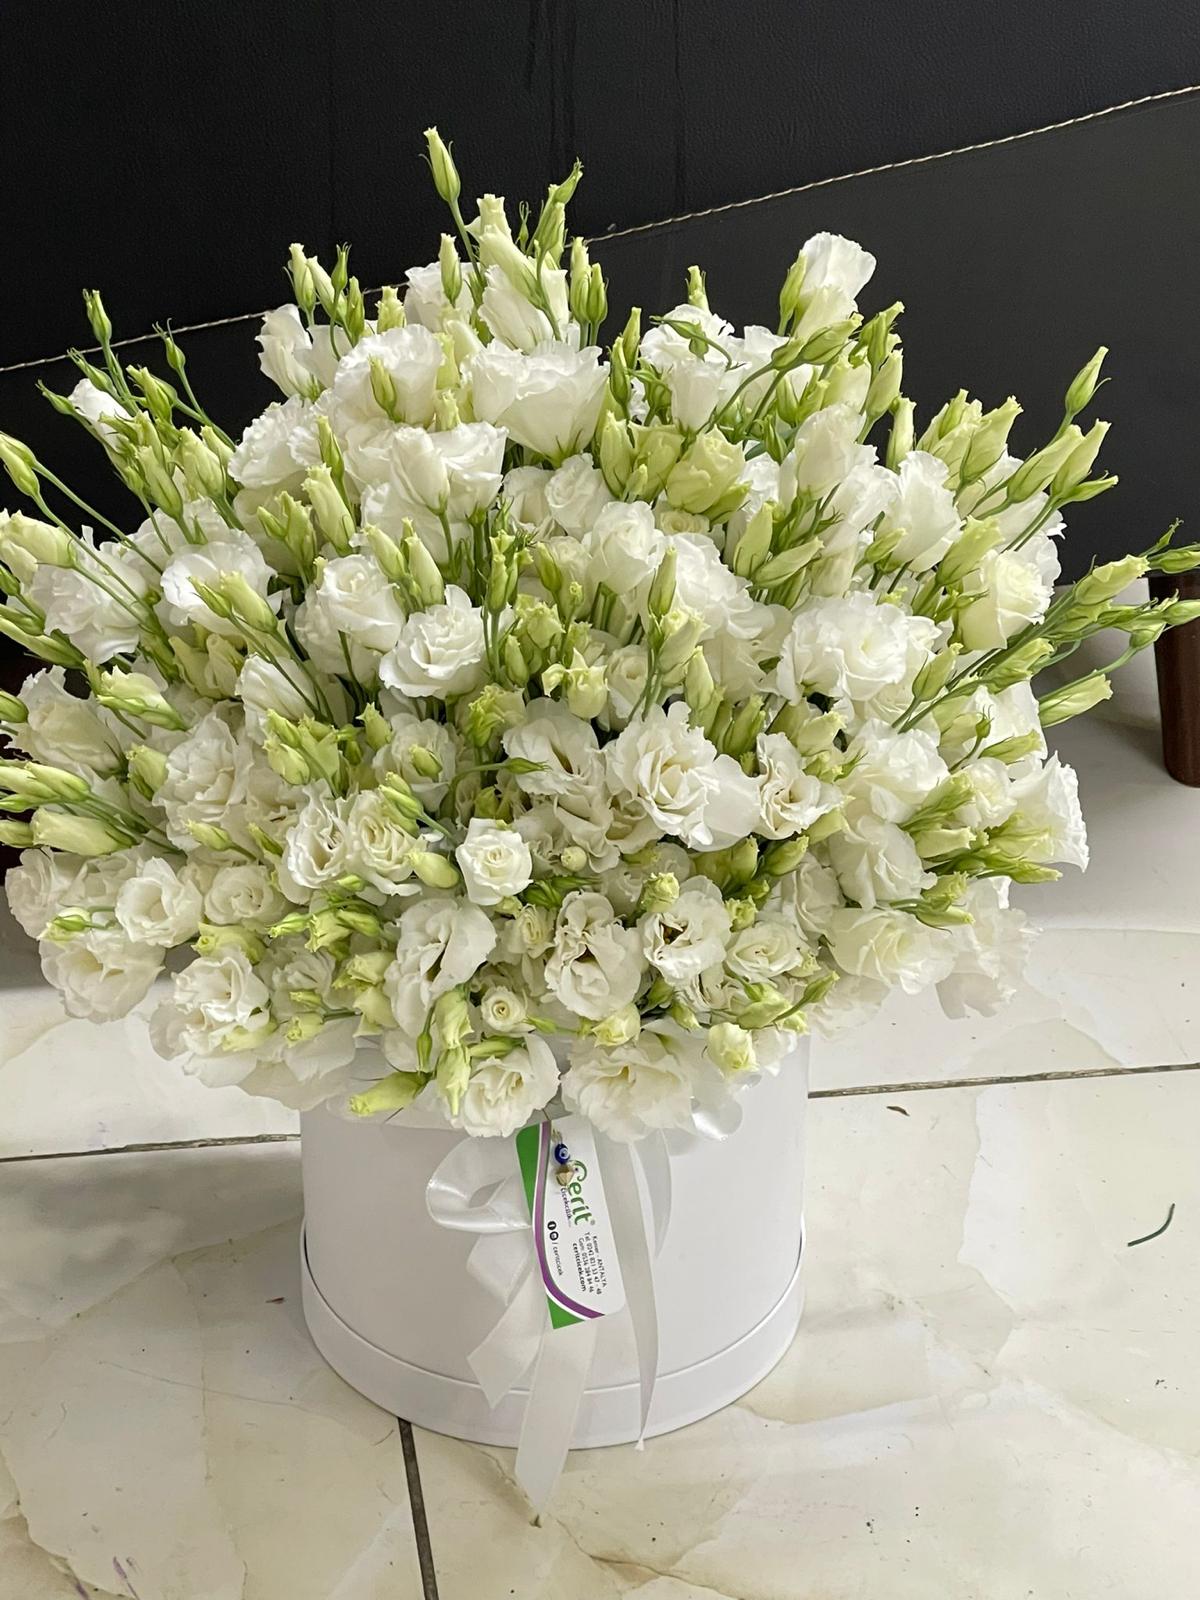  Заказ цветов в Кемер  Композиция из белого лизиантуса большого размера